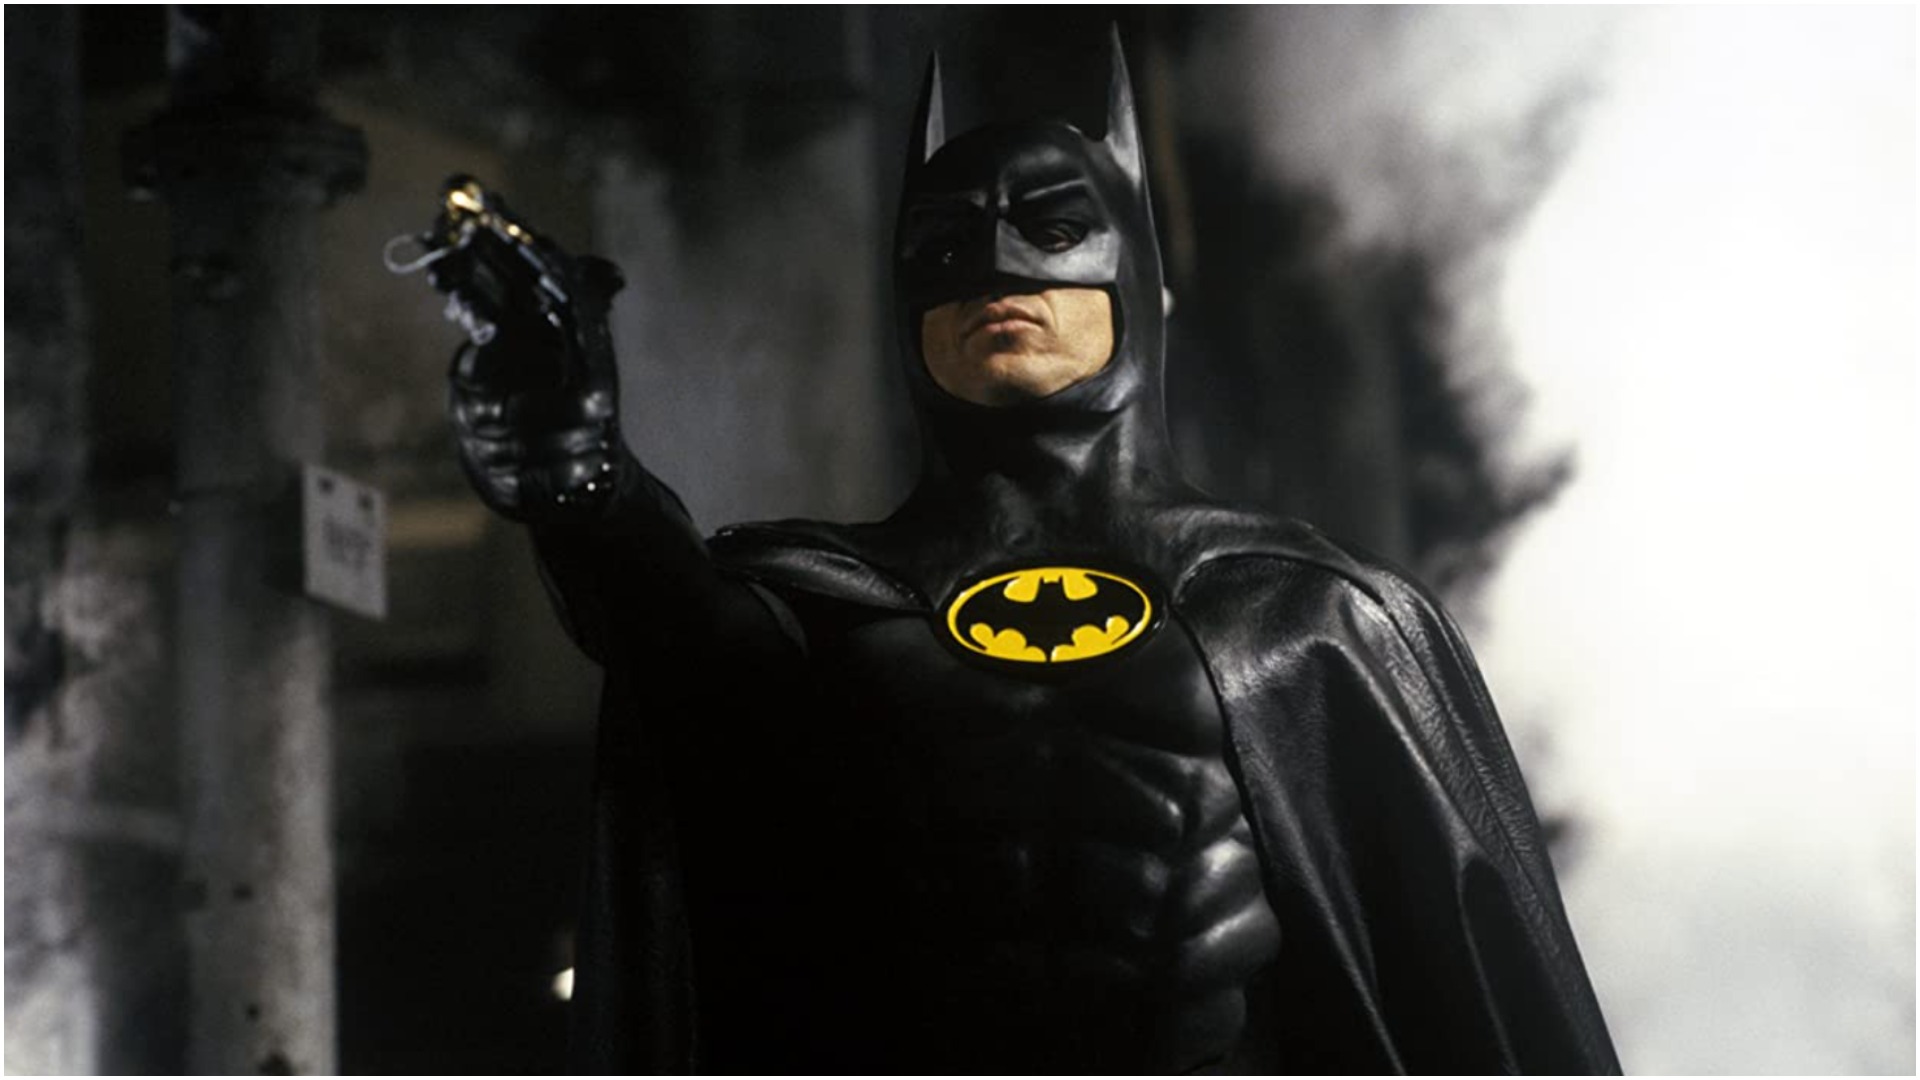 Michael Keaton's Batman Legacy